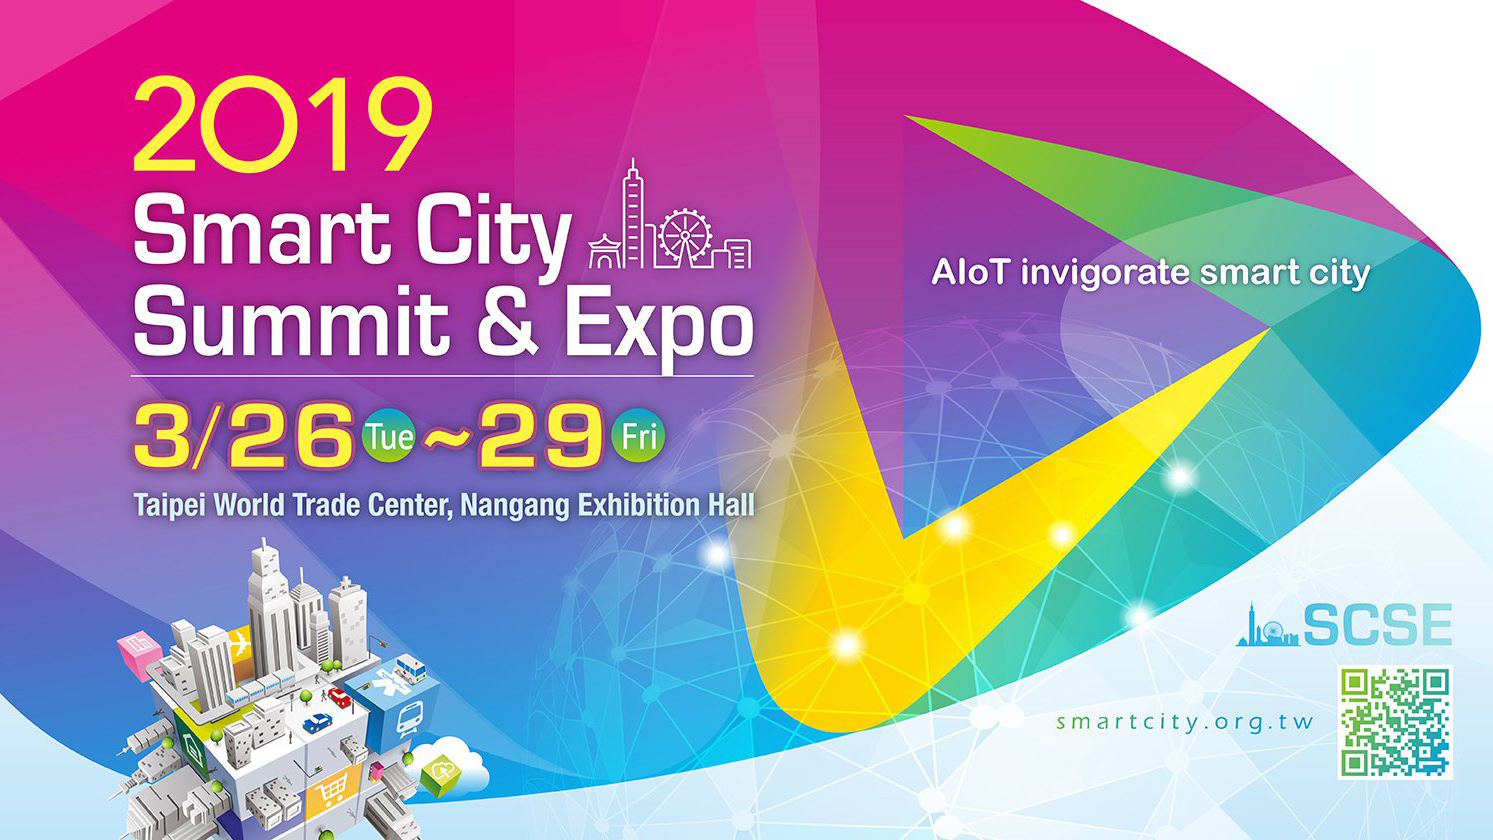 scse 2019 เยี่ยมชมพิธีเปิด 2019 SMART CITY SUMMIT & EXPO ณ กรุงไทเป ประเทศไต้หวัน 